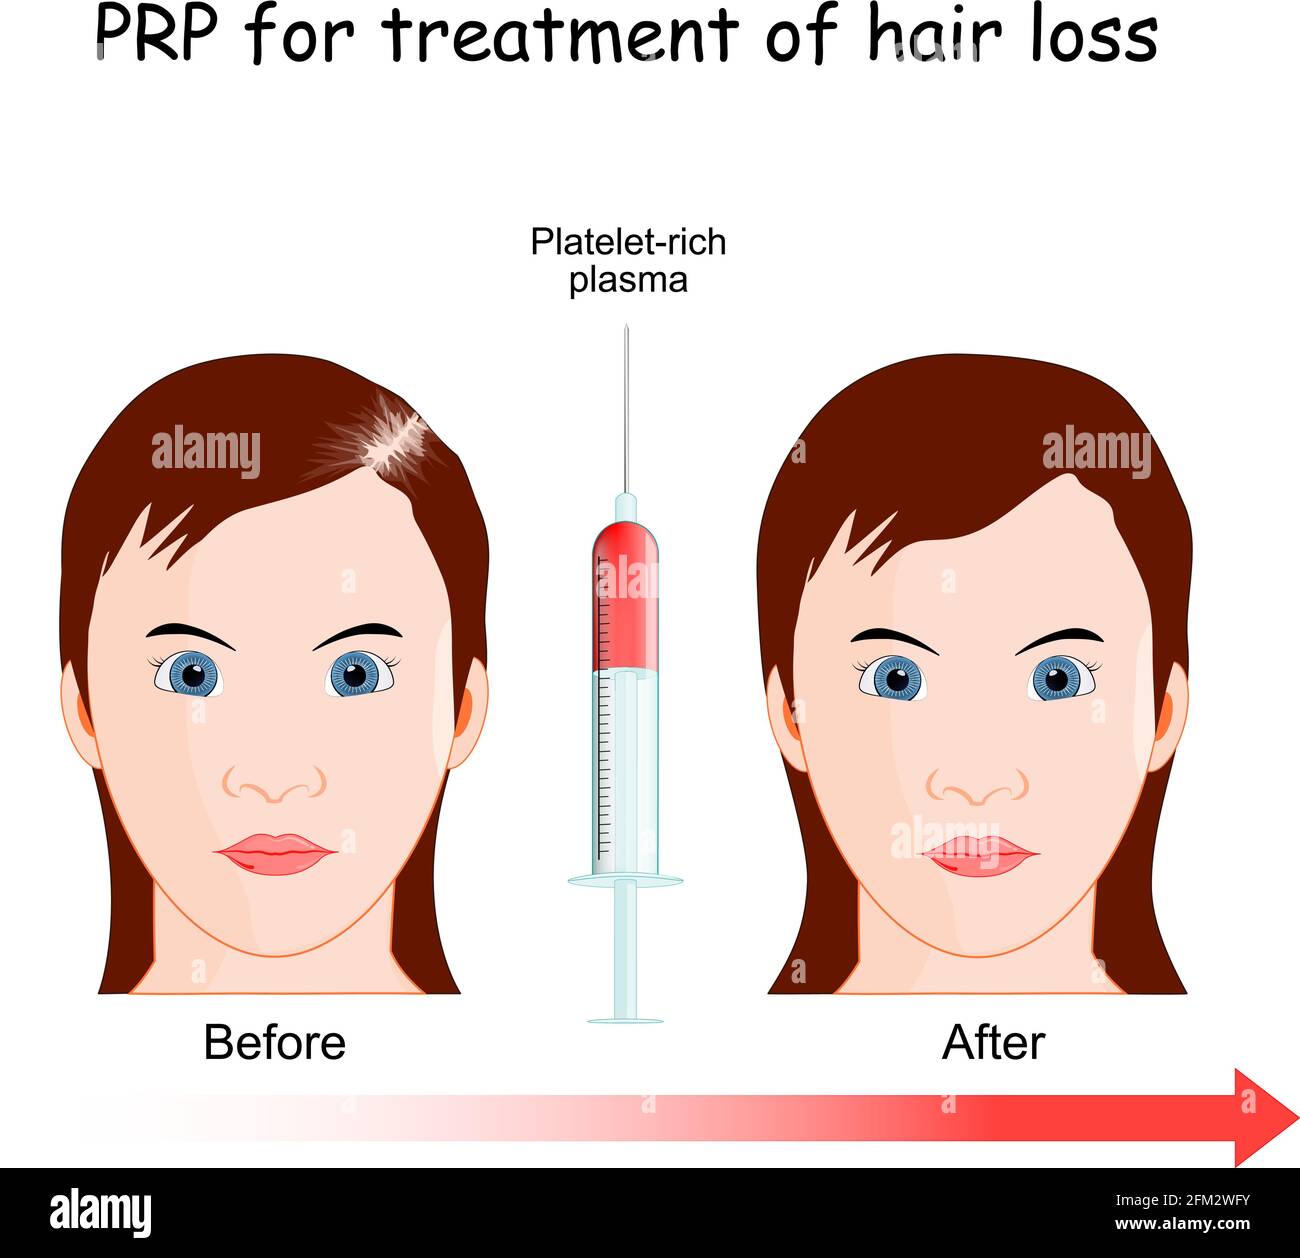 Thrombozytenreiches Plasma. PRP-Verfahren zur Behandlung von Haarausfall. Frau mit Alopezie vor und nach der Injektion. Stock Vektor